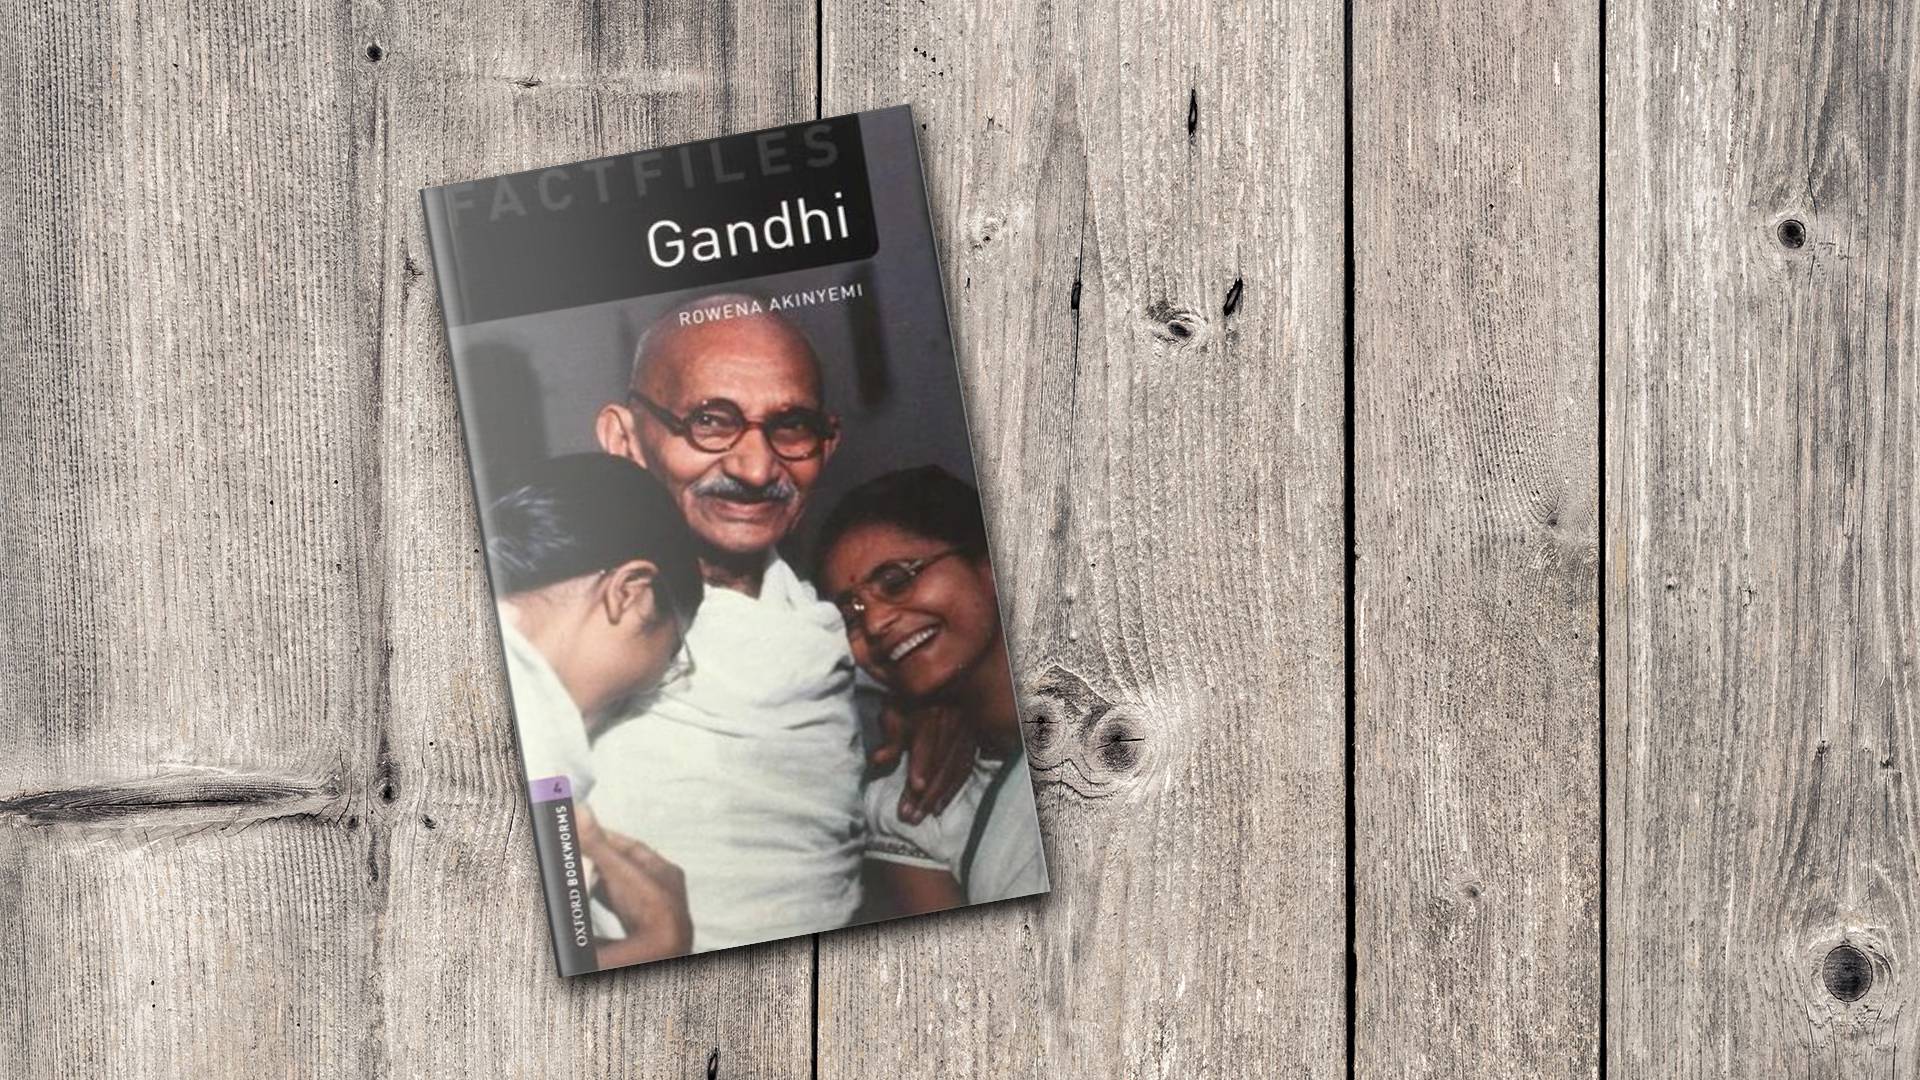 خرید کتاب داستان کوتاه انگلیسی | فروشگاه اینترنتی کتاب زبان | Oxford Bookworms 4 Gandhi | آکسفورد بوک ورمز چهار گاندی